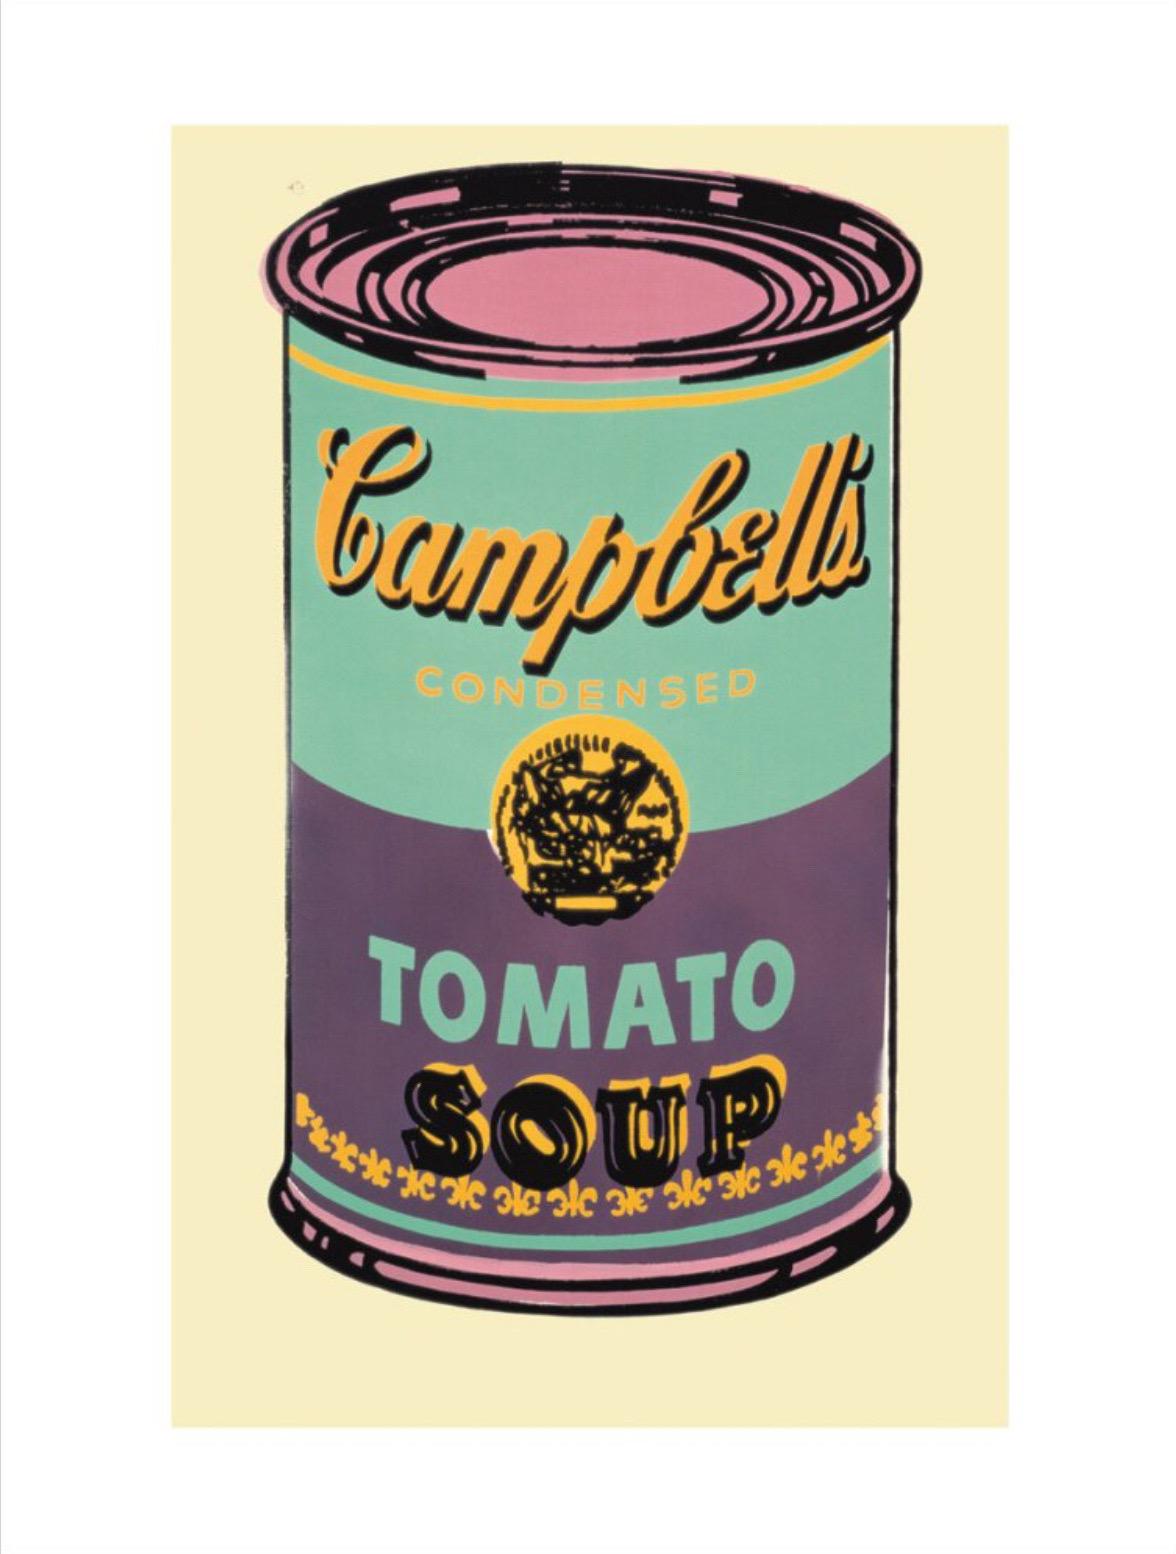 Andy Warhol, Campbell's Soup Can, 1965 (grün und lila)

250gsm gestrichenes grafisches Papier

Bildgröße 30 × 20 cm (11,81 x 7,87 in)

Papierformat 36 × 28 cm (11,02 x 14,17 Zoll)

Die Campbell's Soup Cans von Andy Warhol gehören zu den bekanntesten